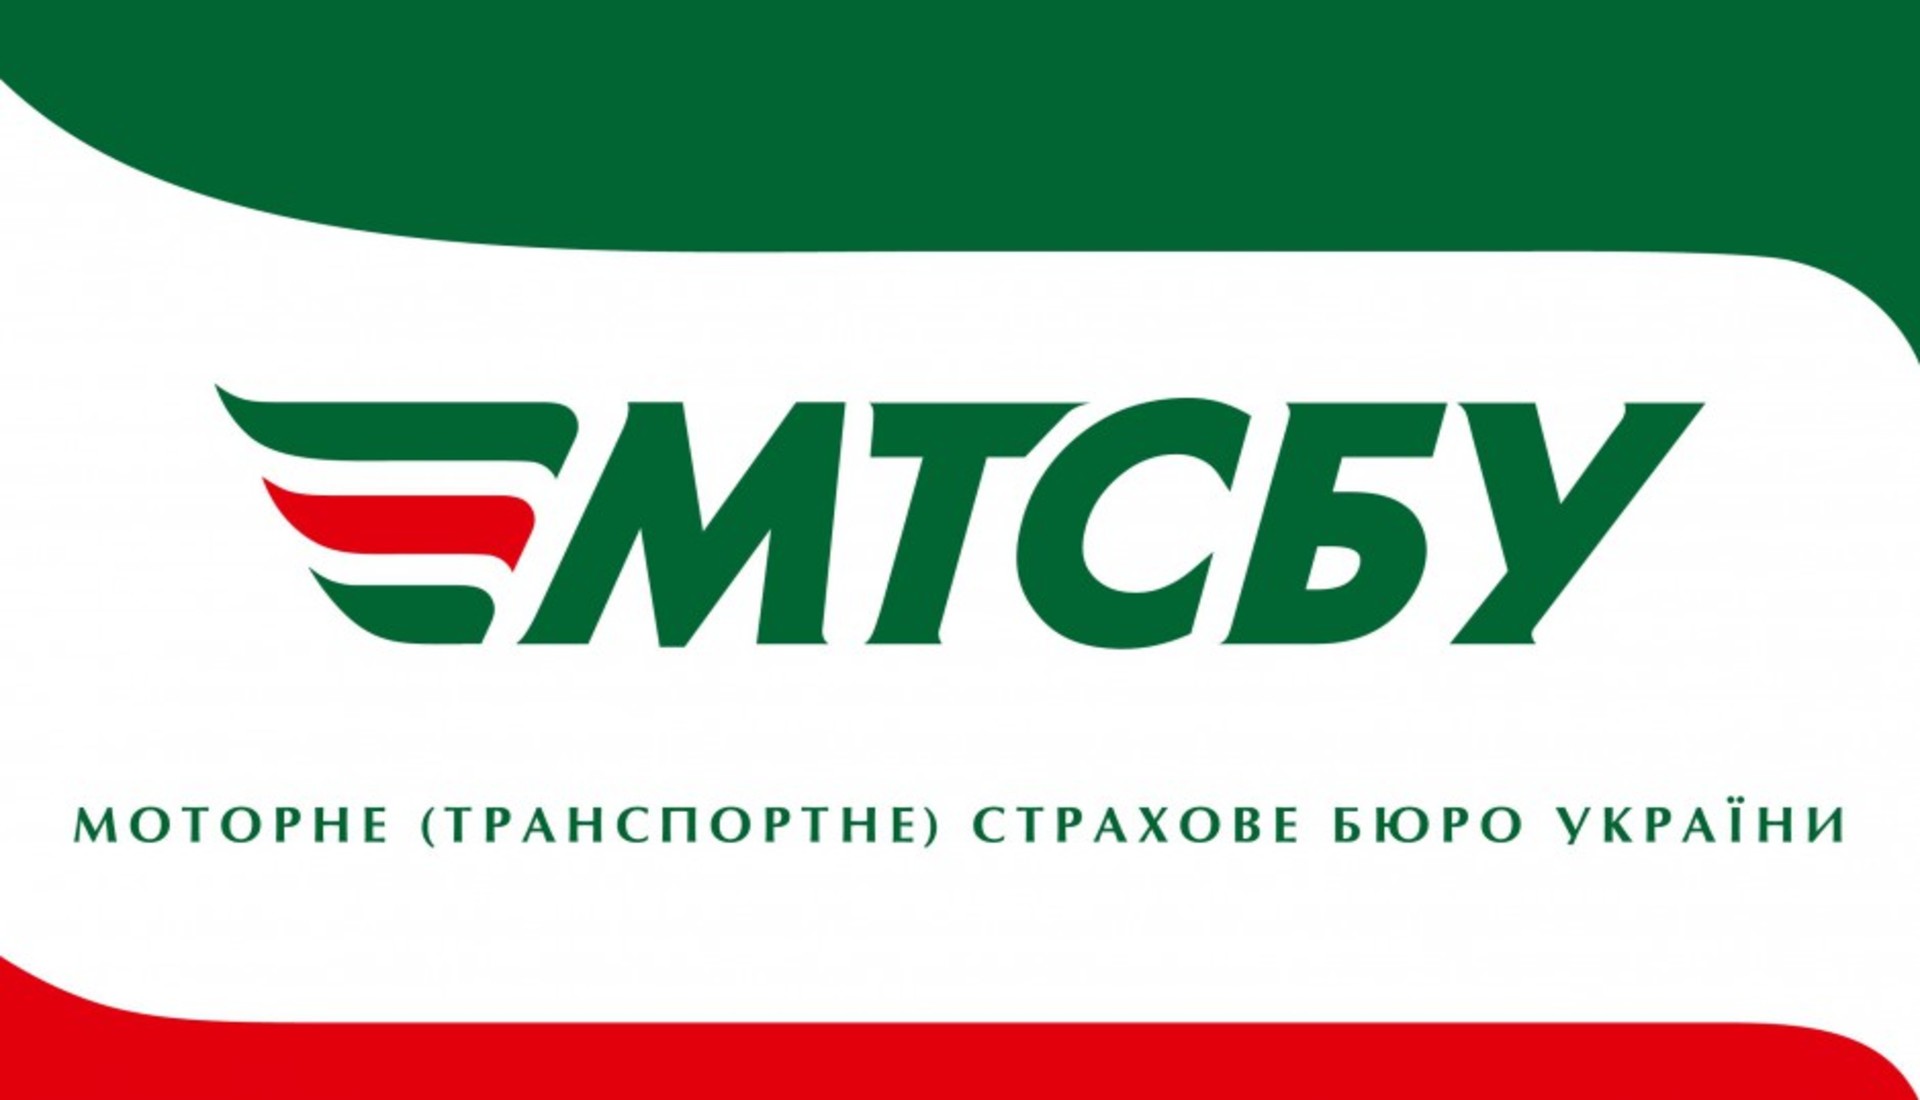 МТСБУ оцінило якість врегулювання ОСАЦВ за другий квартал 2015